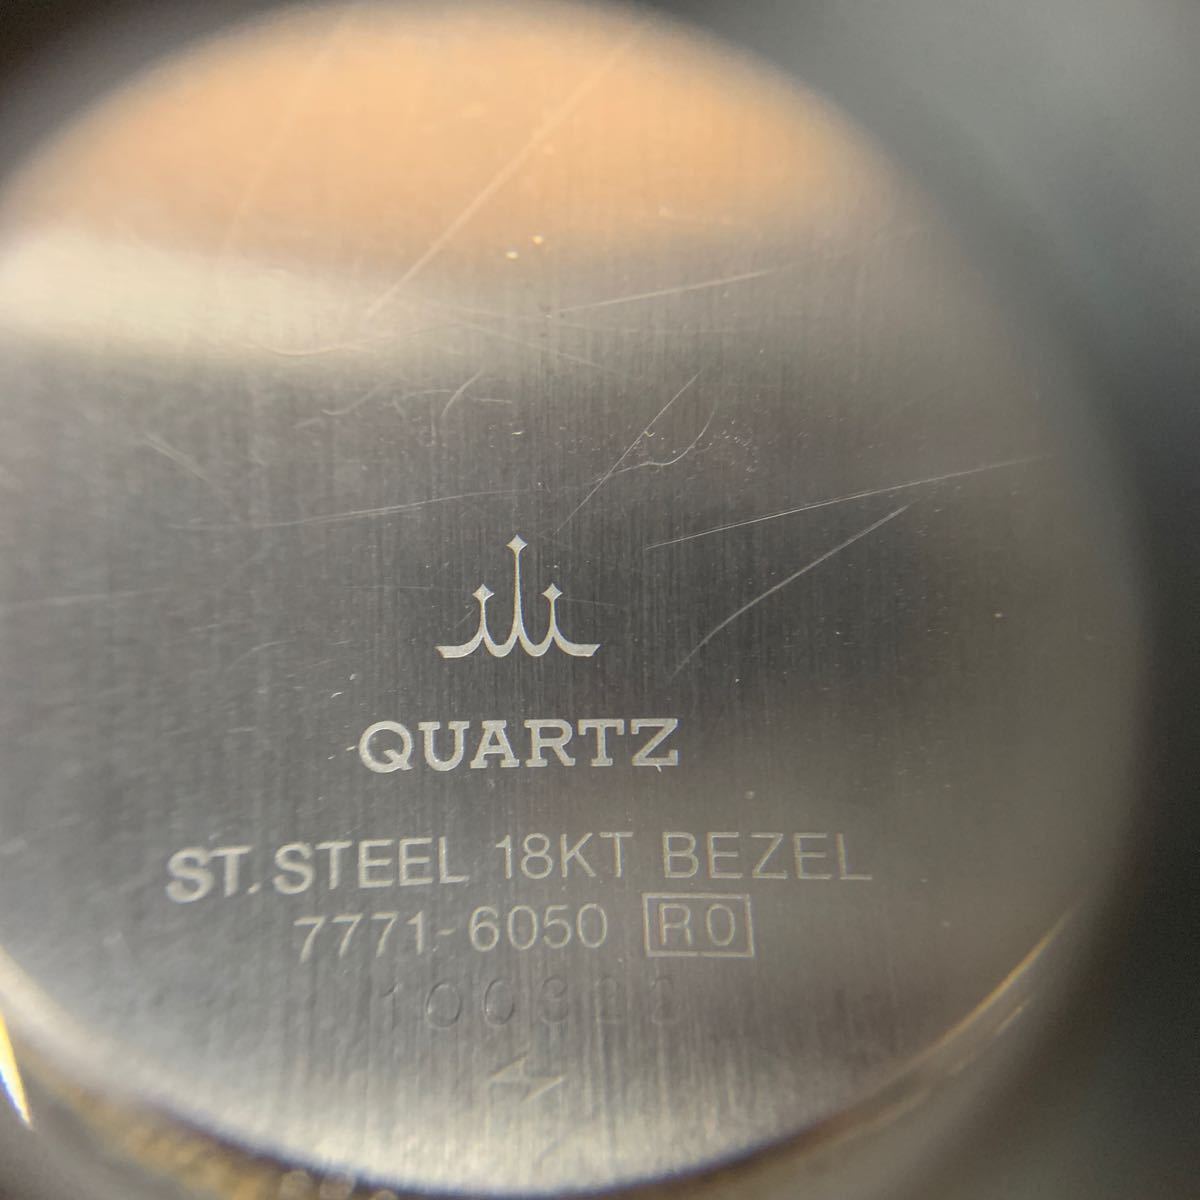 SEIKO セイコー CREDOR クレドール 7771-6050 メンズ 腕時計 QZ クォーツ 18KT × SS ベゼル ヴィンテージ 腕時計 手巻き 3針 ST STEELの画像2